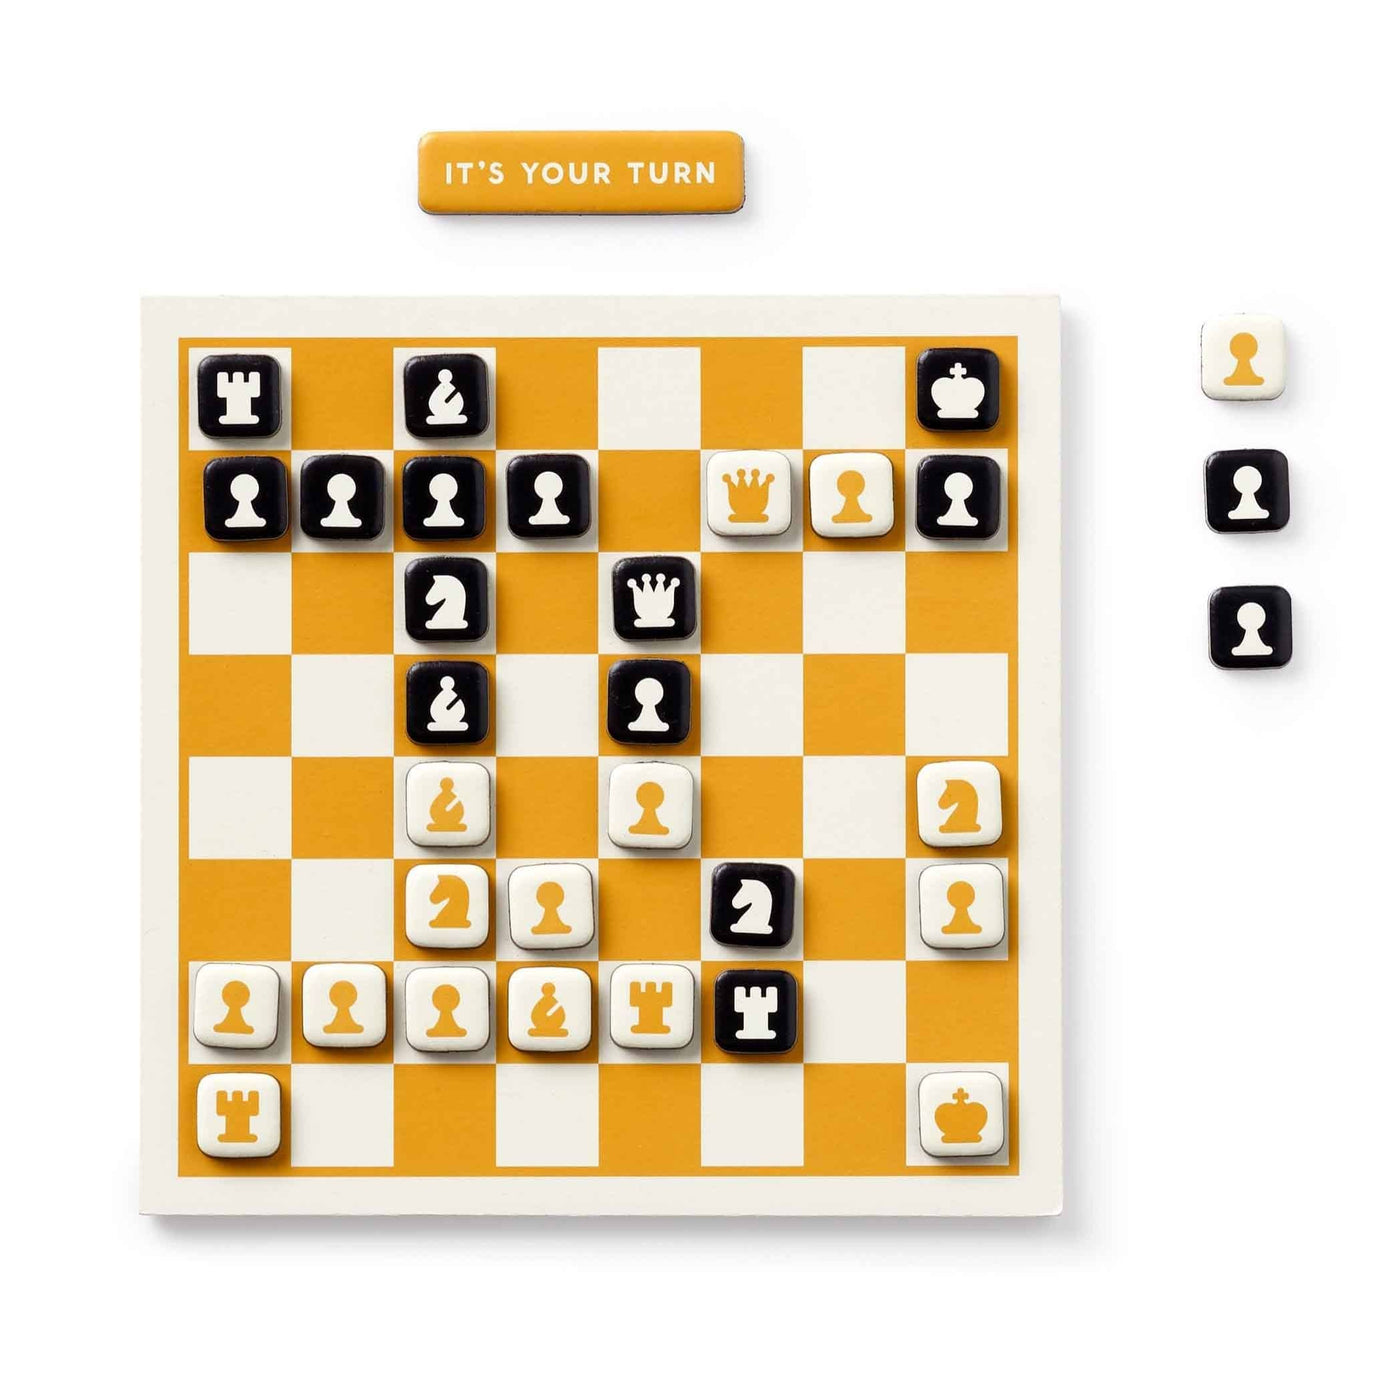 Profitez des échecs à votre rythme avec le jeu magnétique Brass Monkey. Fixez le plateau à des surfaces magnétiques, jouez quand vous le souhaitez, sans contraintes de temps.